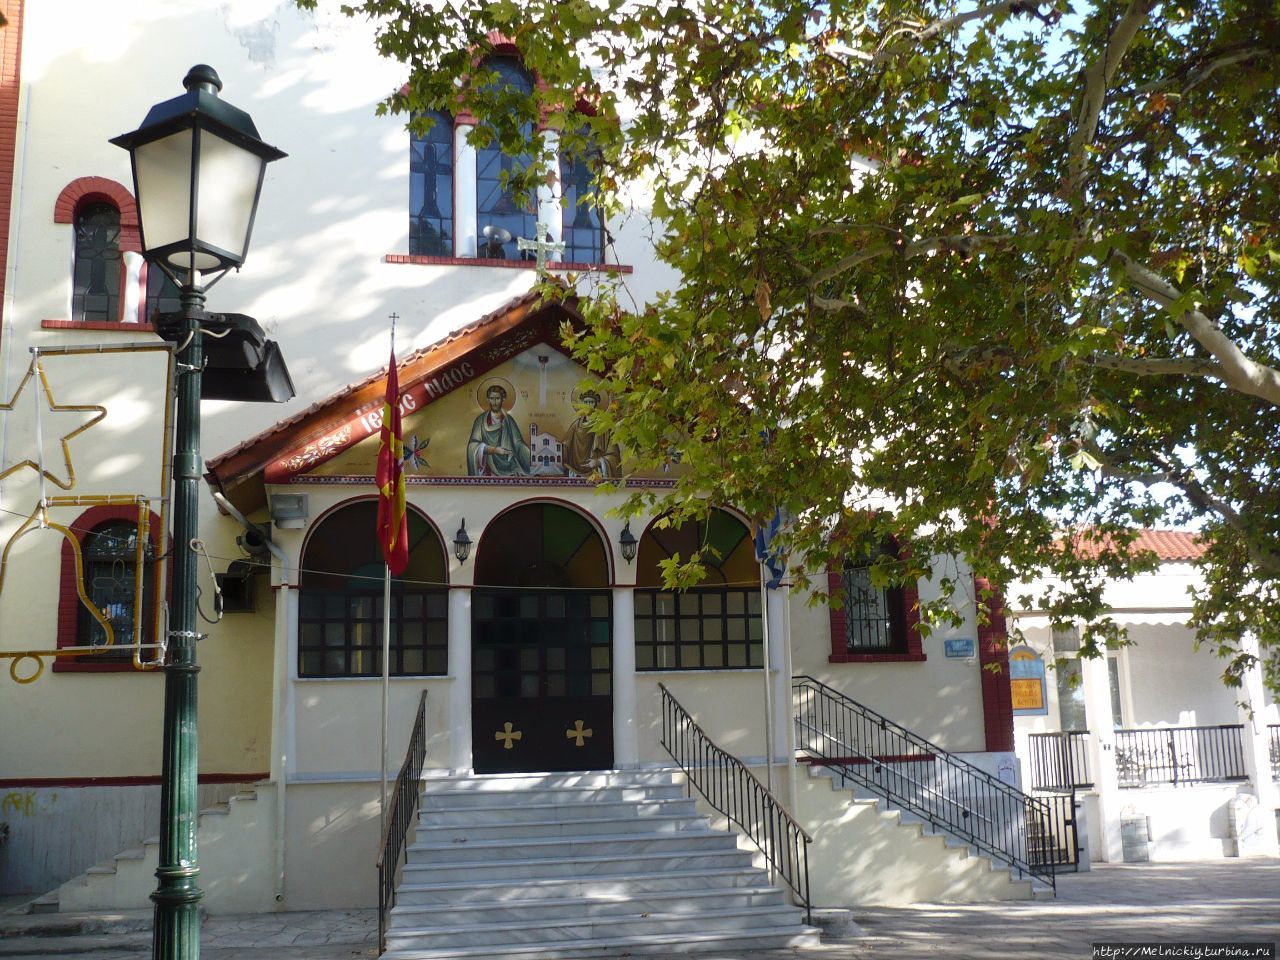 Церковь Святых бессребреников / Church of St. Anargyroi Eptapyrgiou